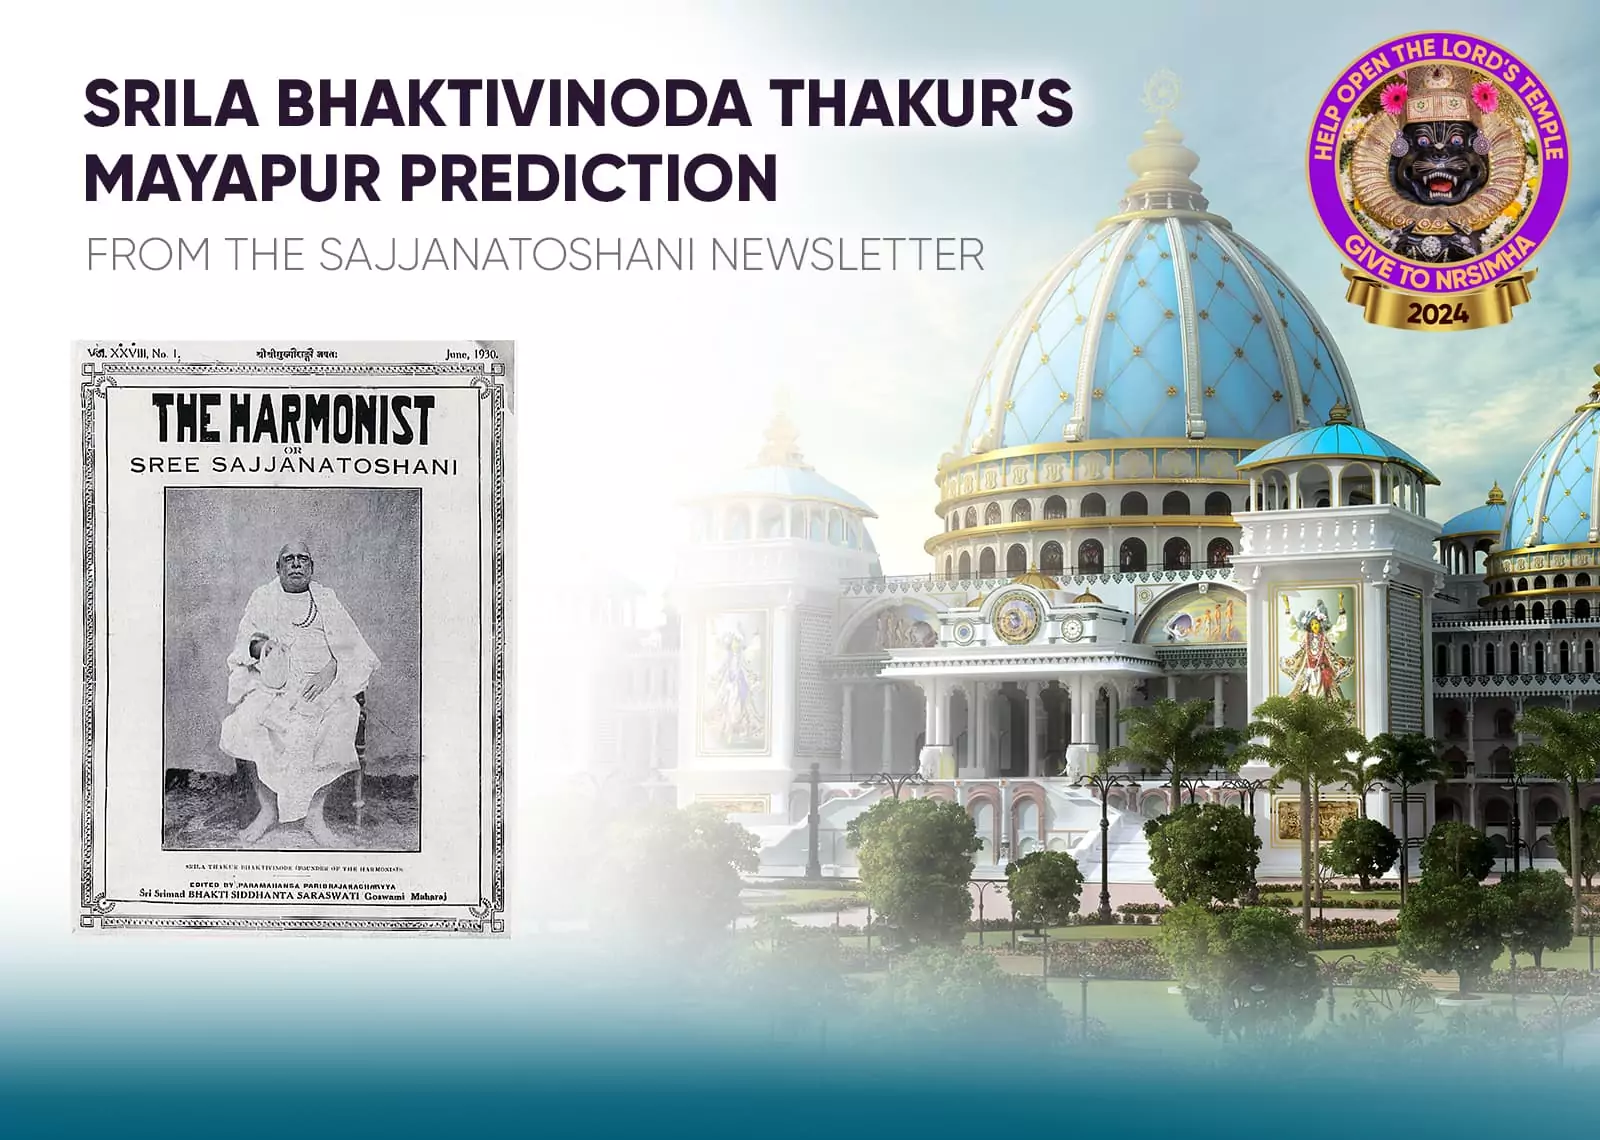 La predicción de Mayapur de Srila Bhaktivinoda Thakura y #039;